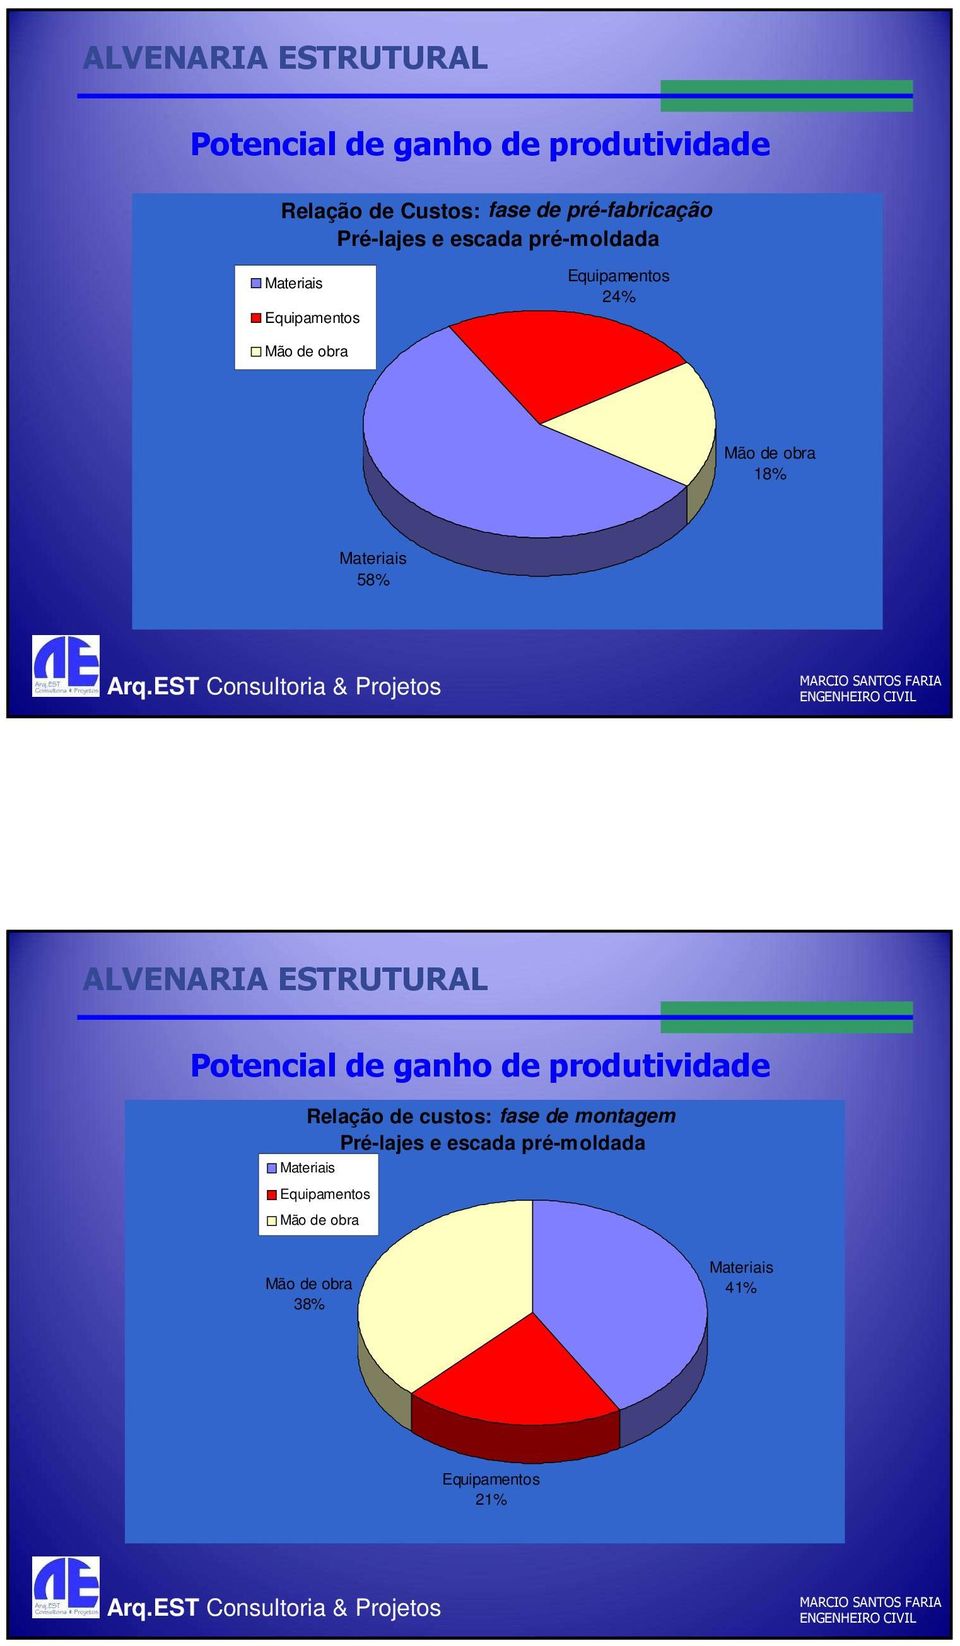 Materiais 58% Potencial de ganho de produtividade Relação de custos: fase de montagem